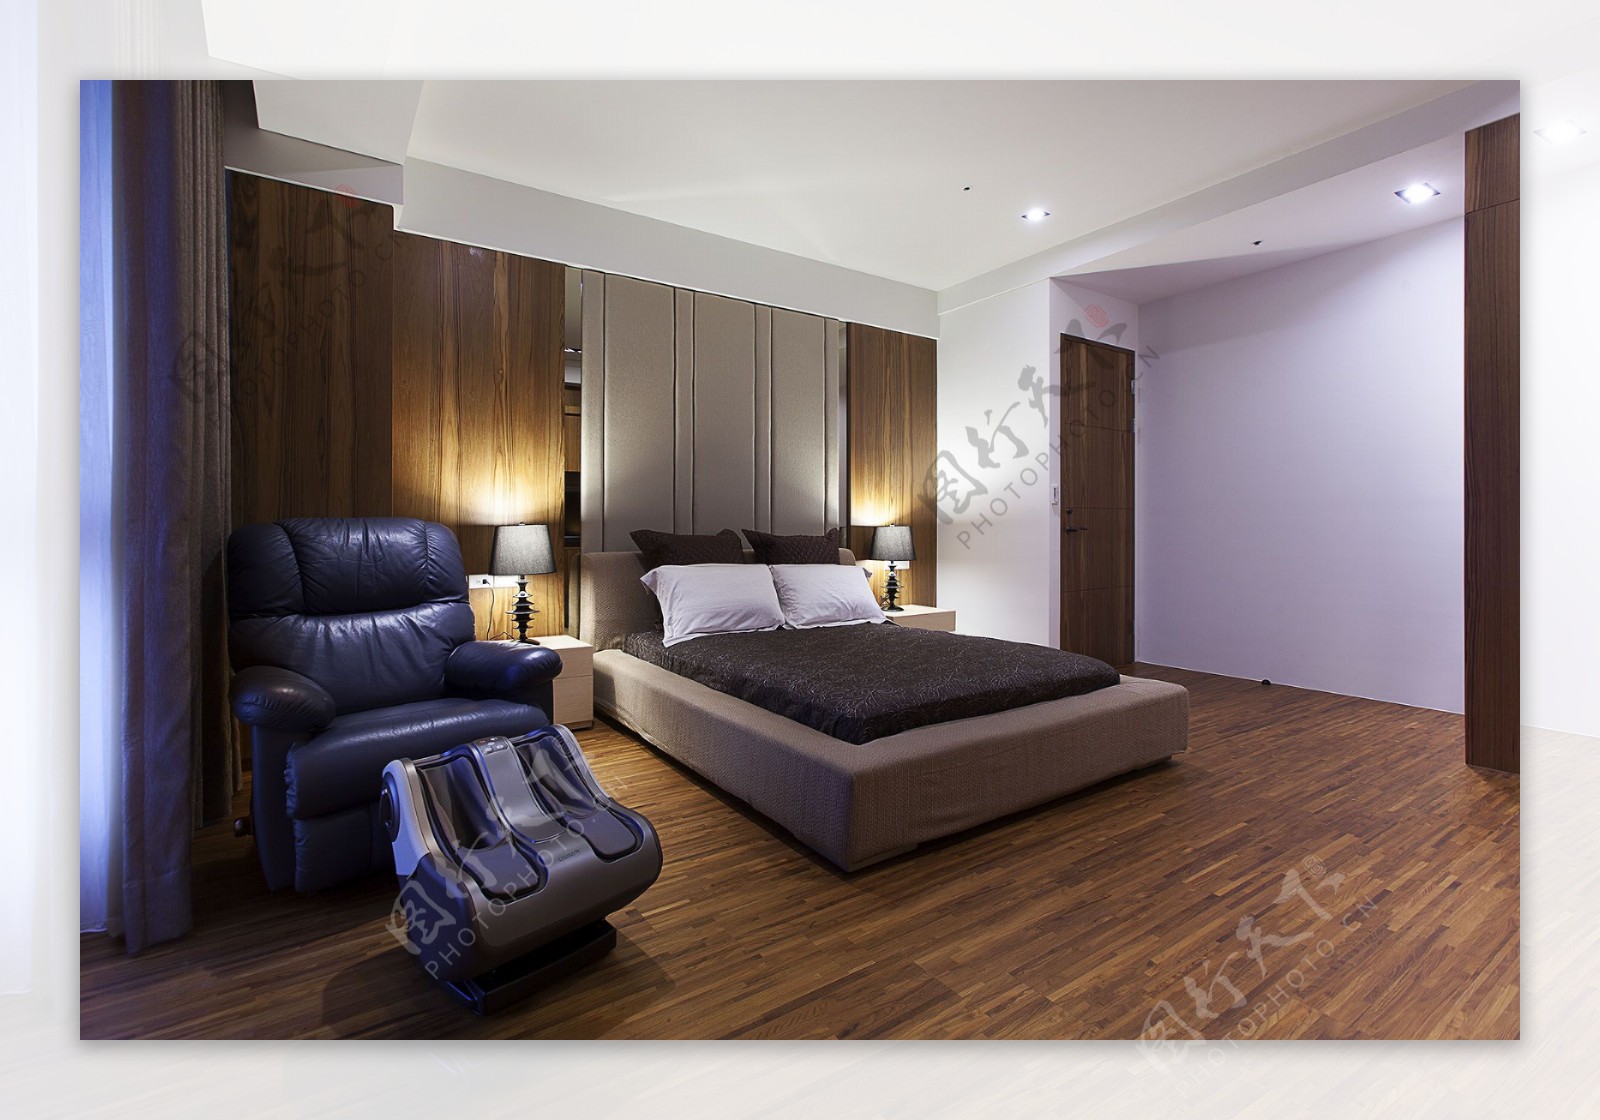 木质地板设计卧室效果图